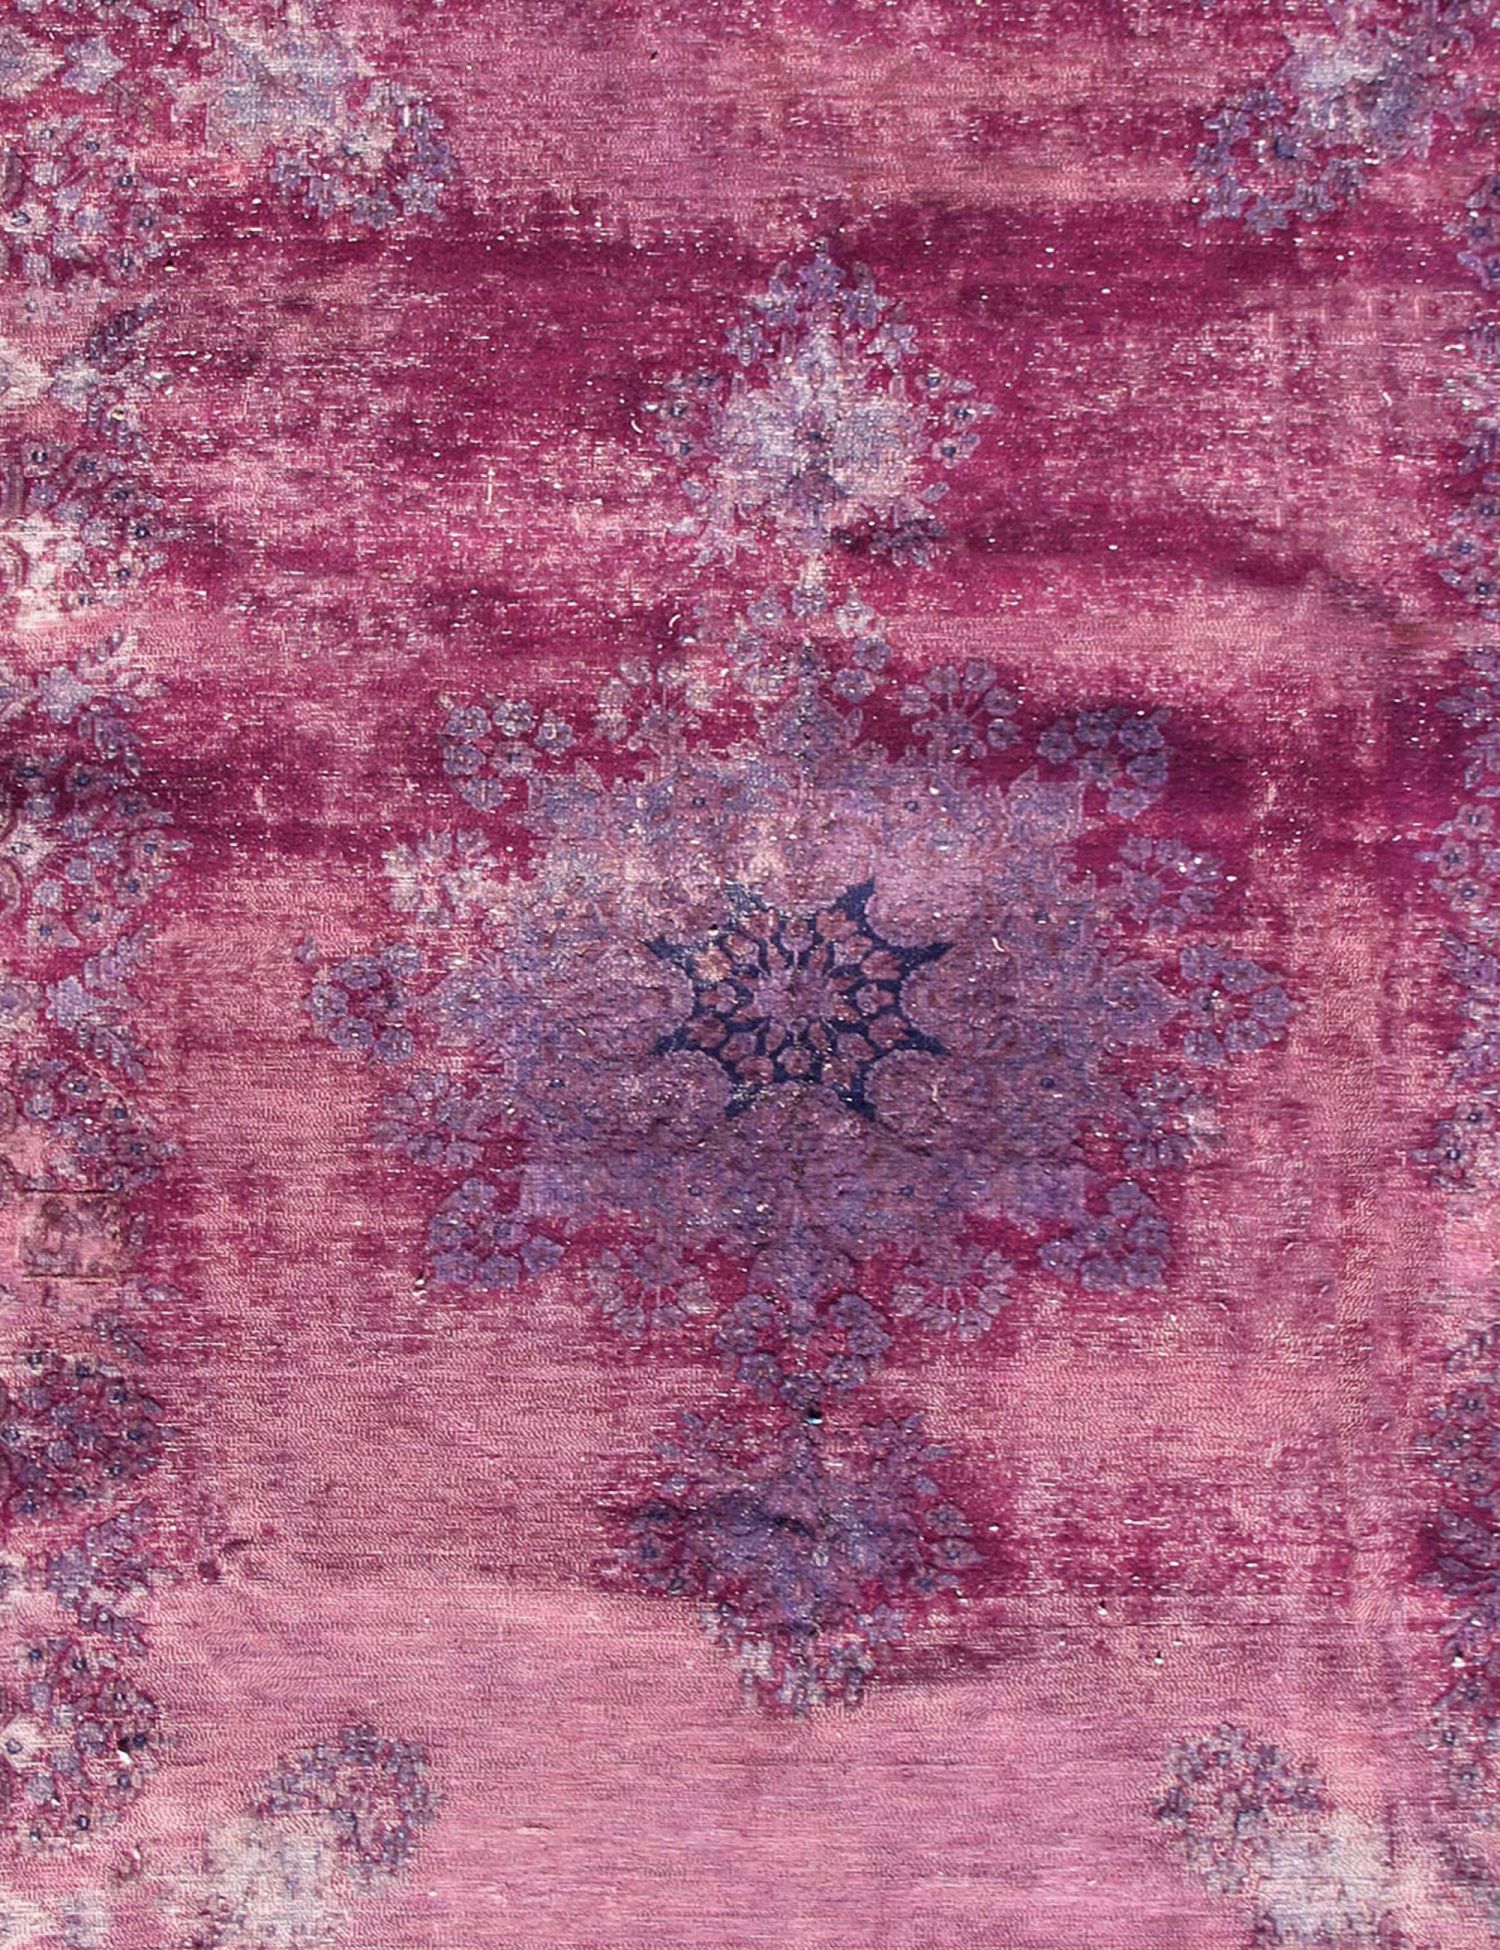 Persischer Vintage Teppich  lila <br/>343 x 230 cm